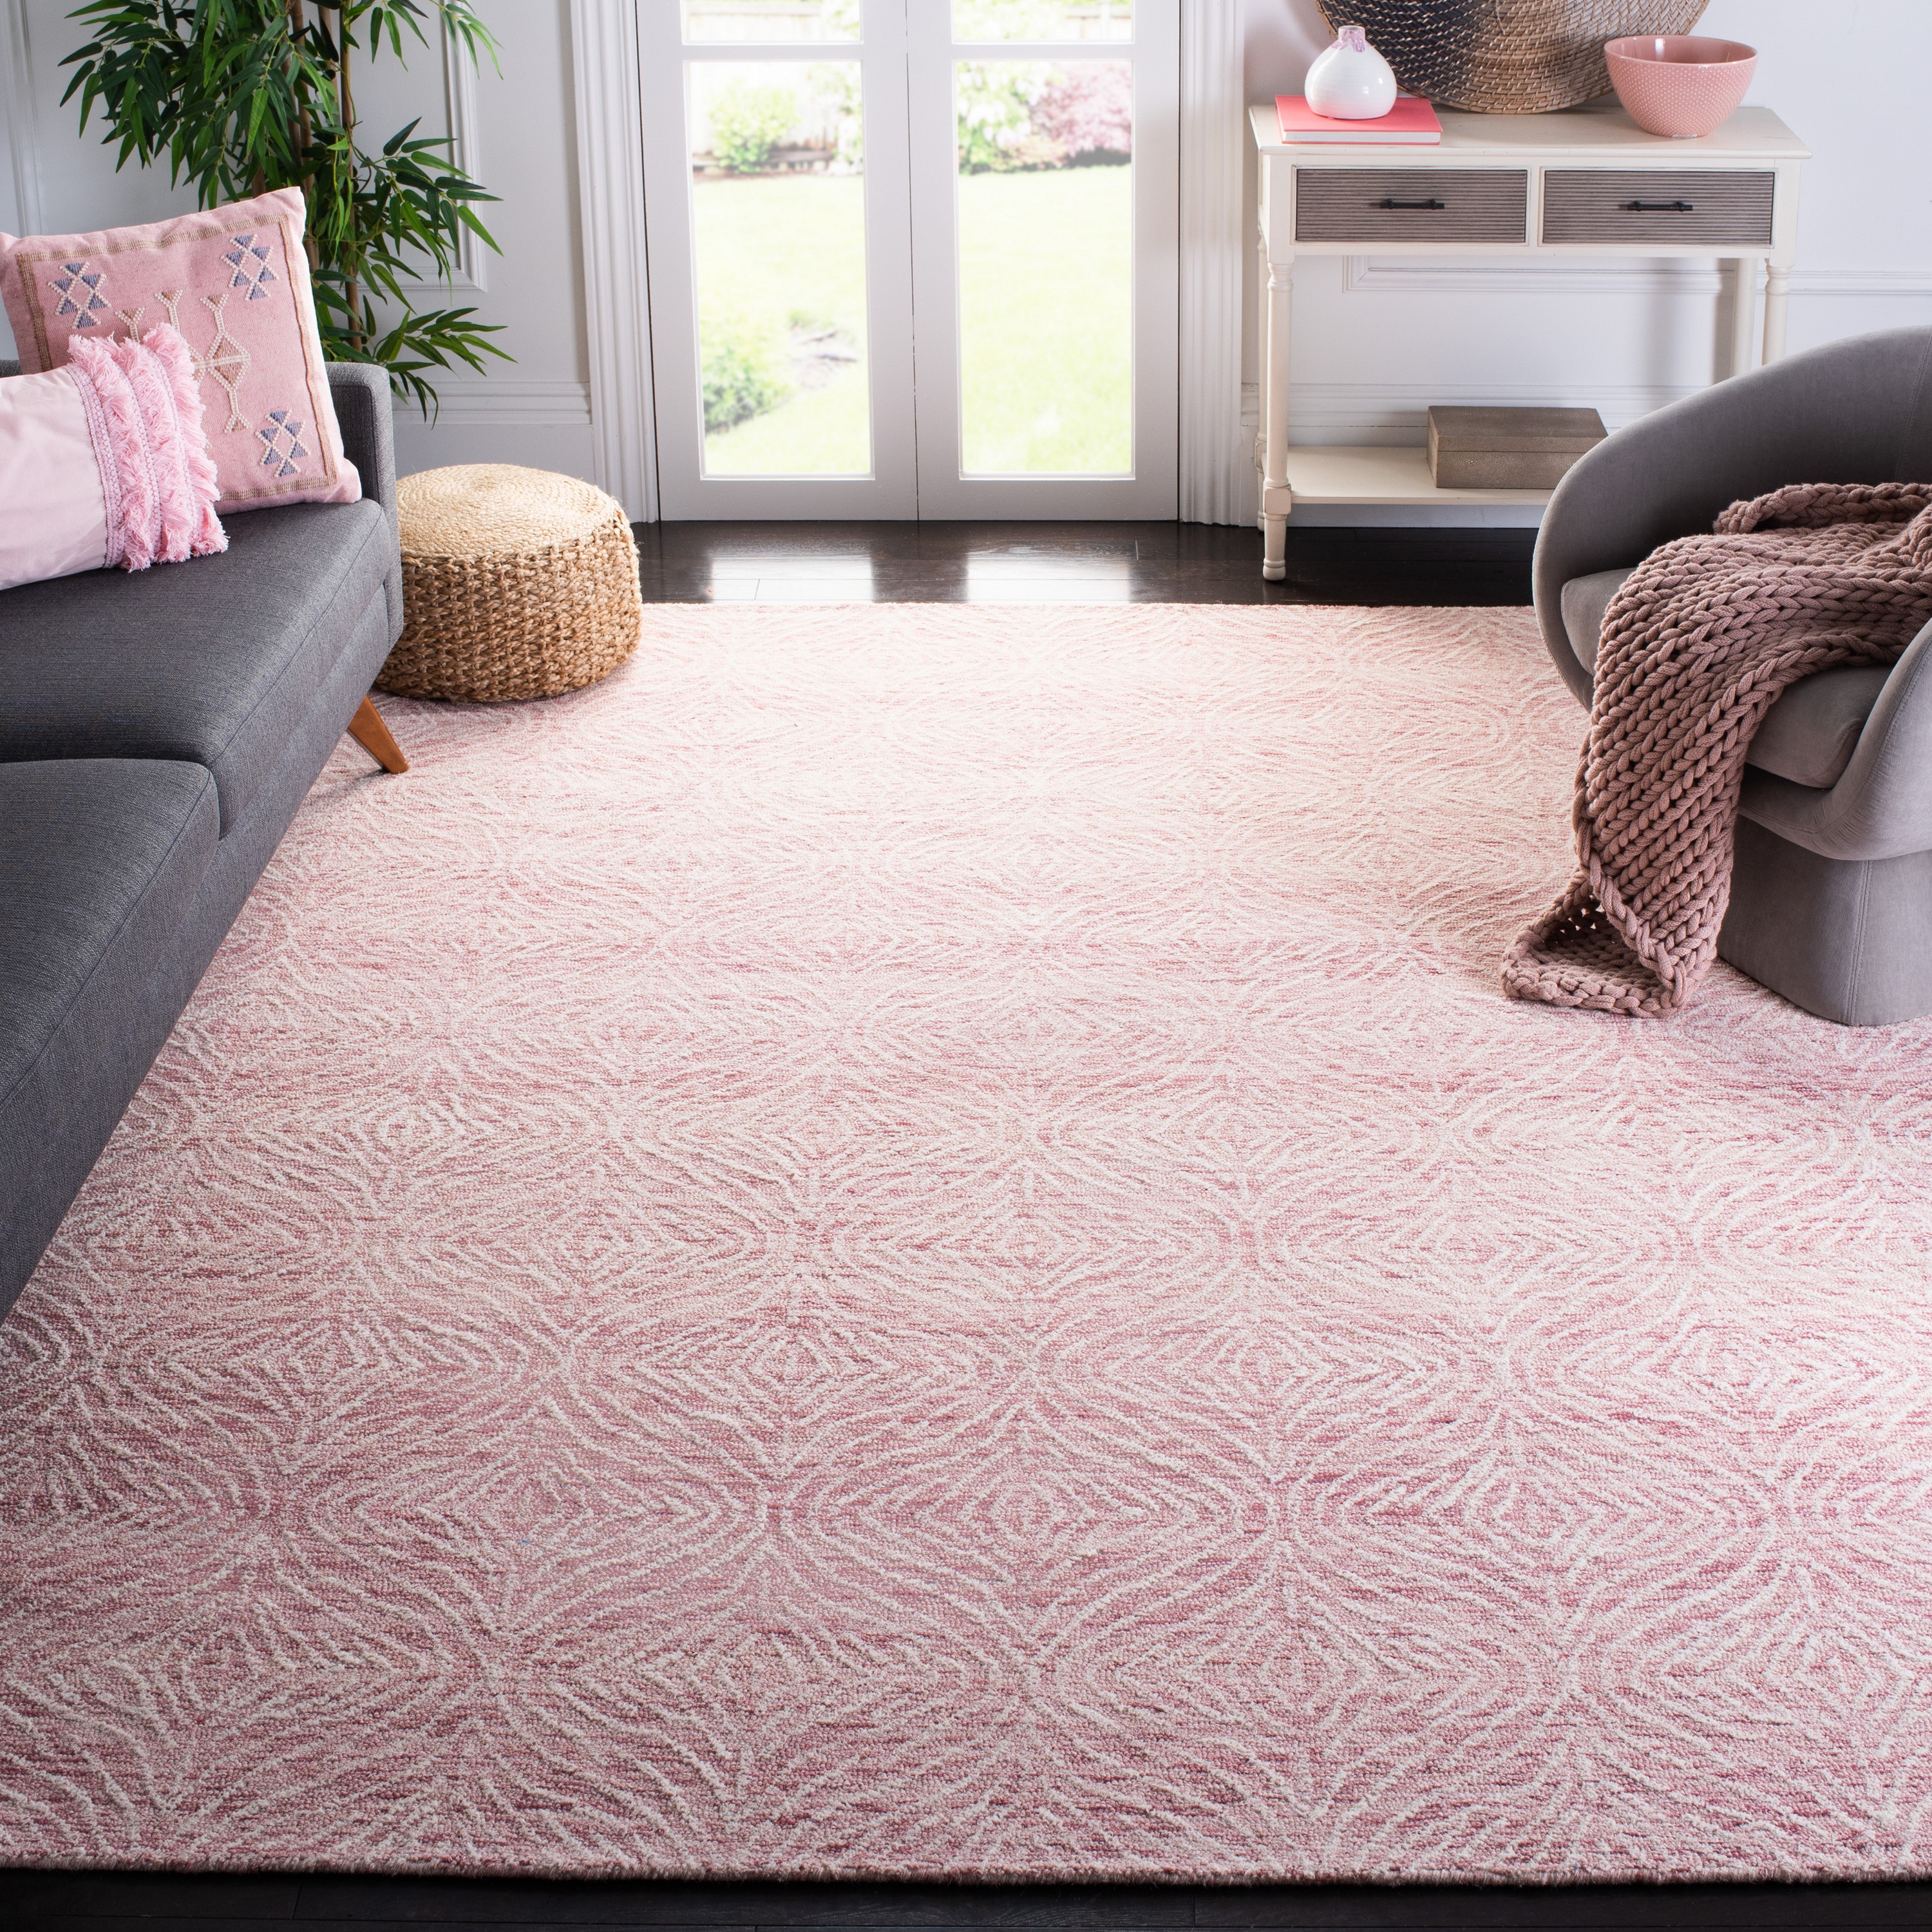 Light Pink Carpet, Blush Pink Rug